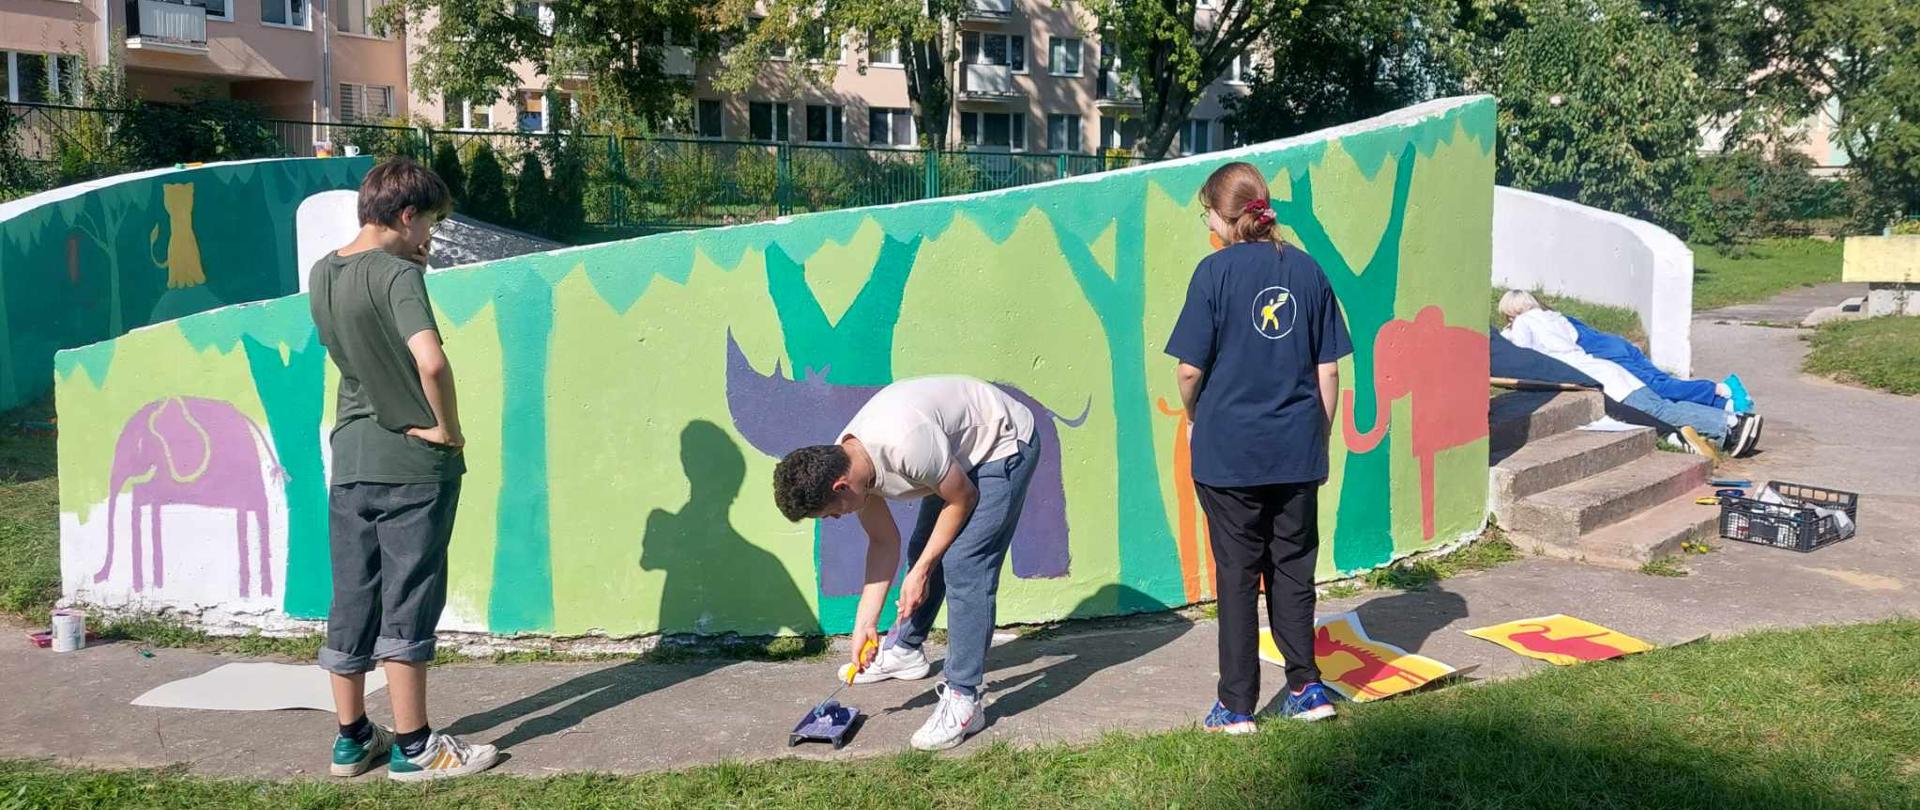 Jest ciepły, słoneczny dzień. Troje uczniów maluje murar (drzewa, słonie nosorożec) na murze przedszkola. W tle drzewa, ogrodzenie i bloki.